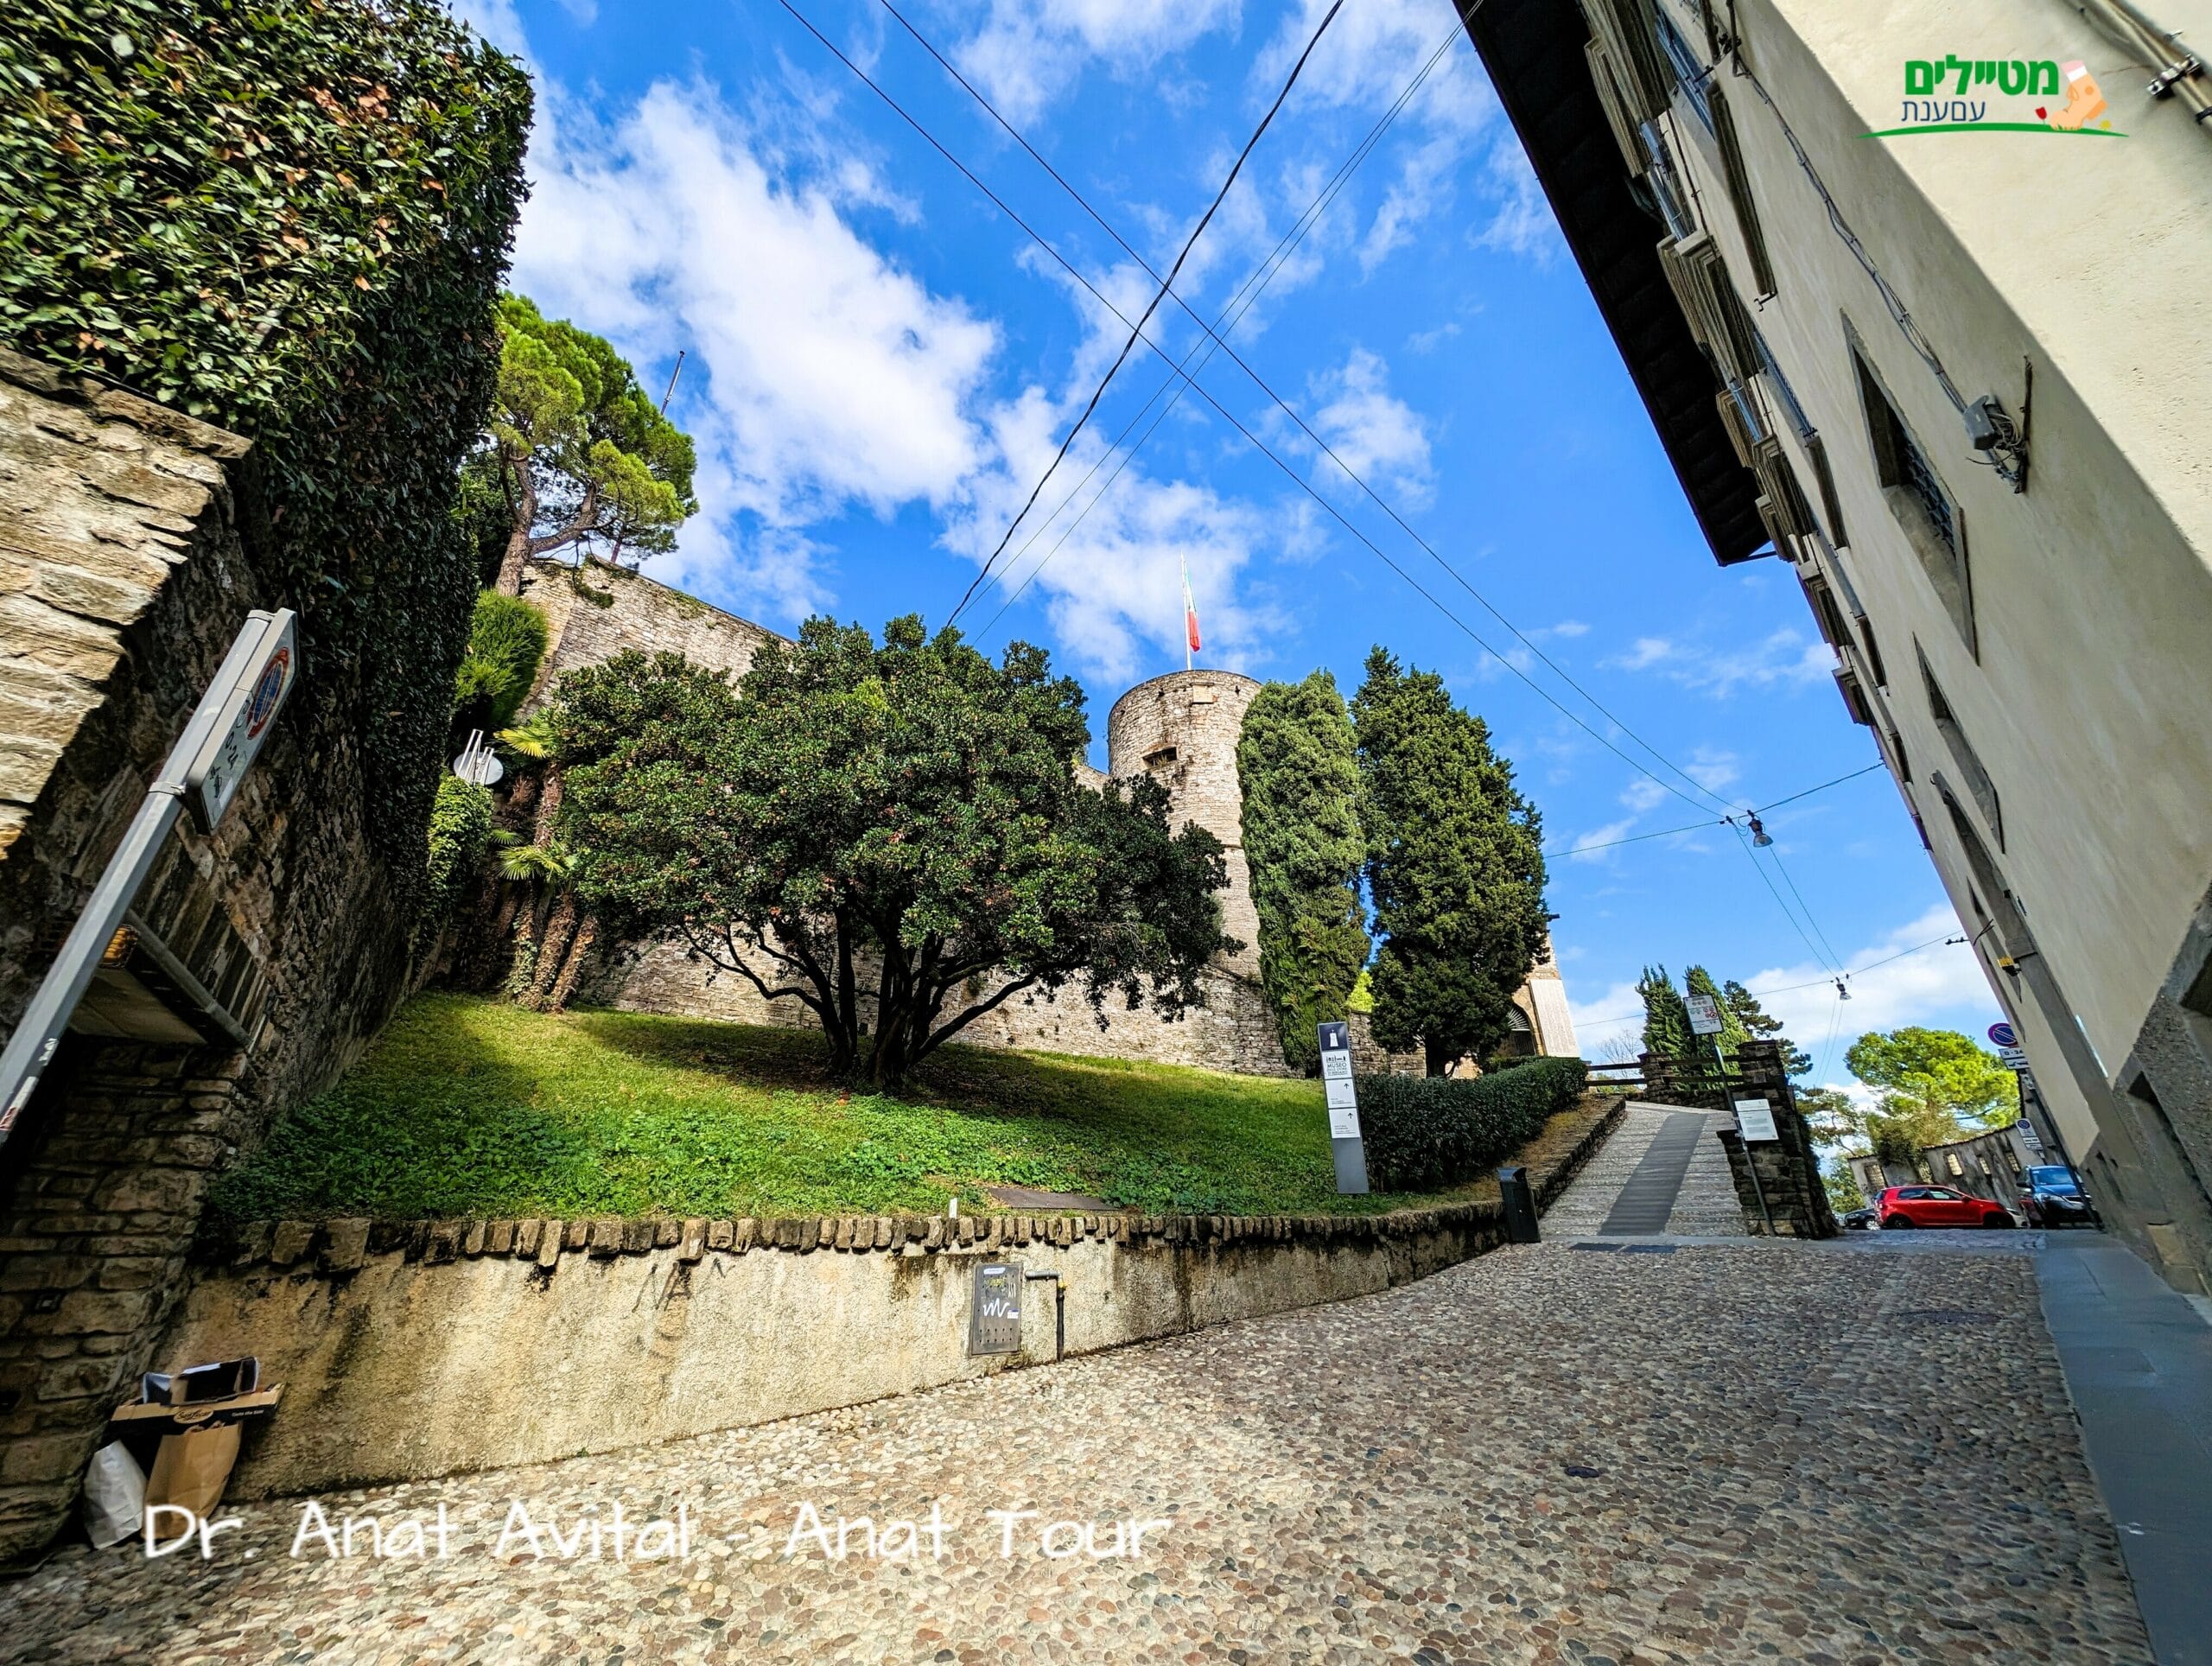 דרך משובצת חלוקי נחל במעלה העיר העליונה העתיקה של ברגמו  (Città Alta), צילום: ד"ר ענת אביטל